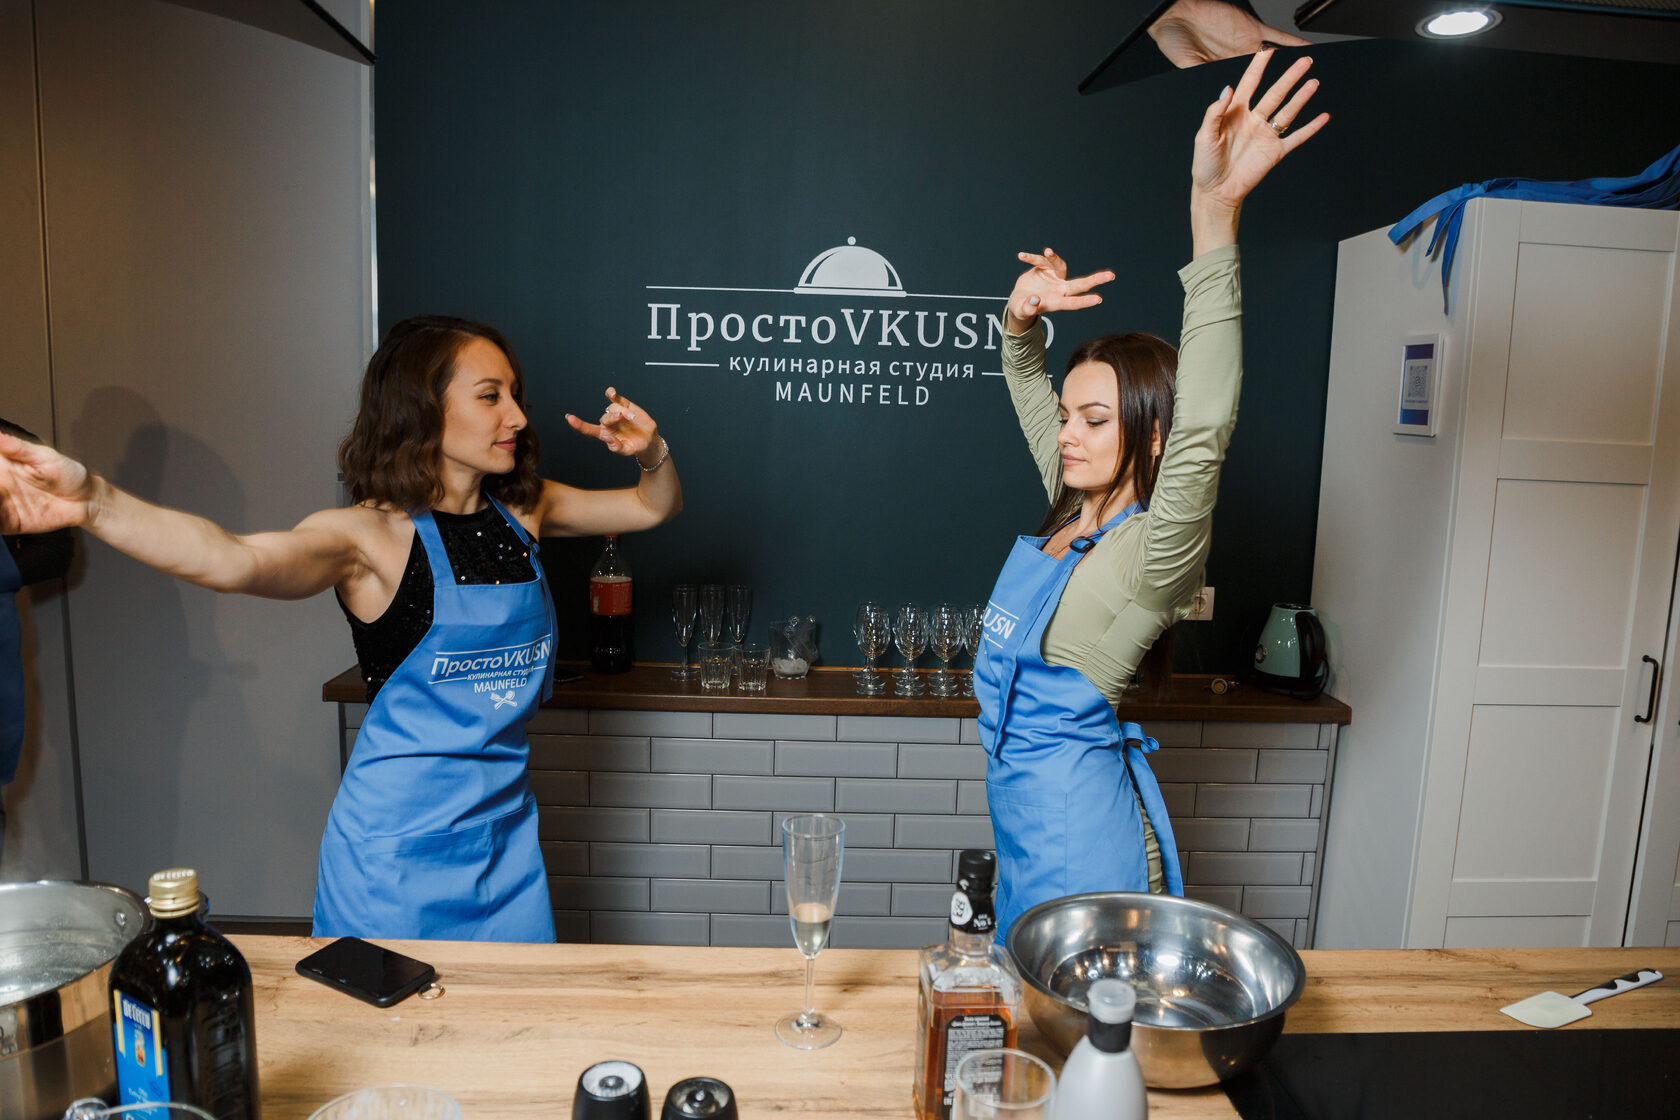 Организация кулинарных мастер-классов в формате Тимбилдинг (Team building) в Москве